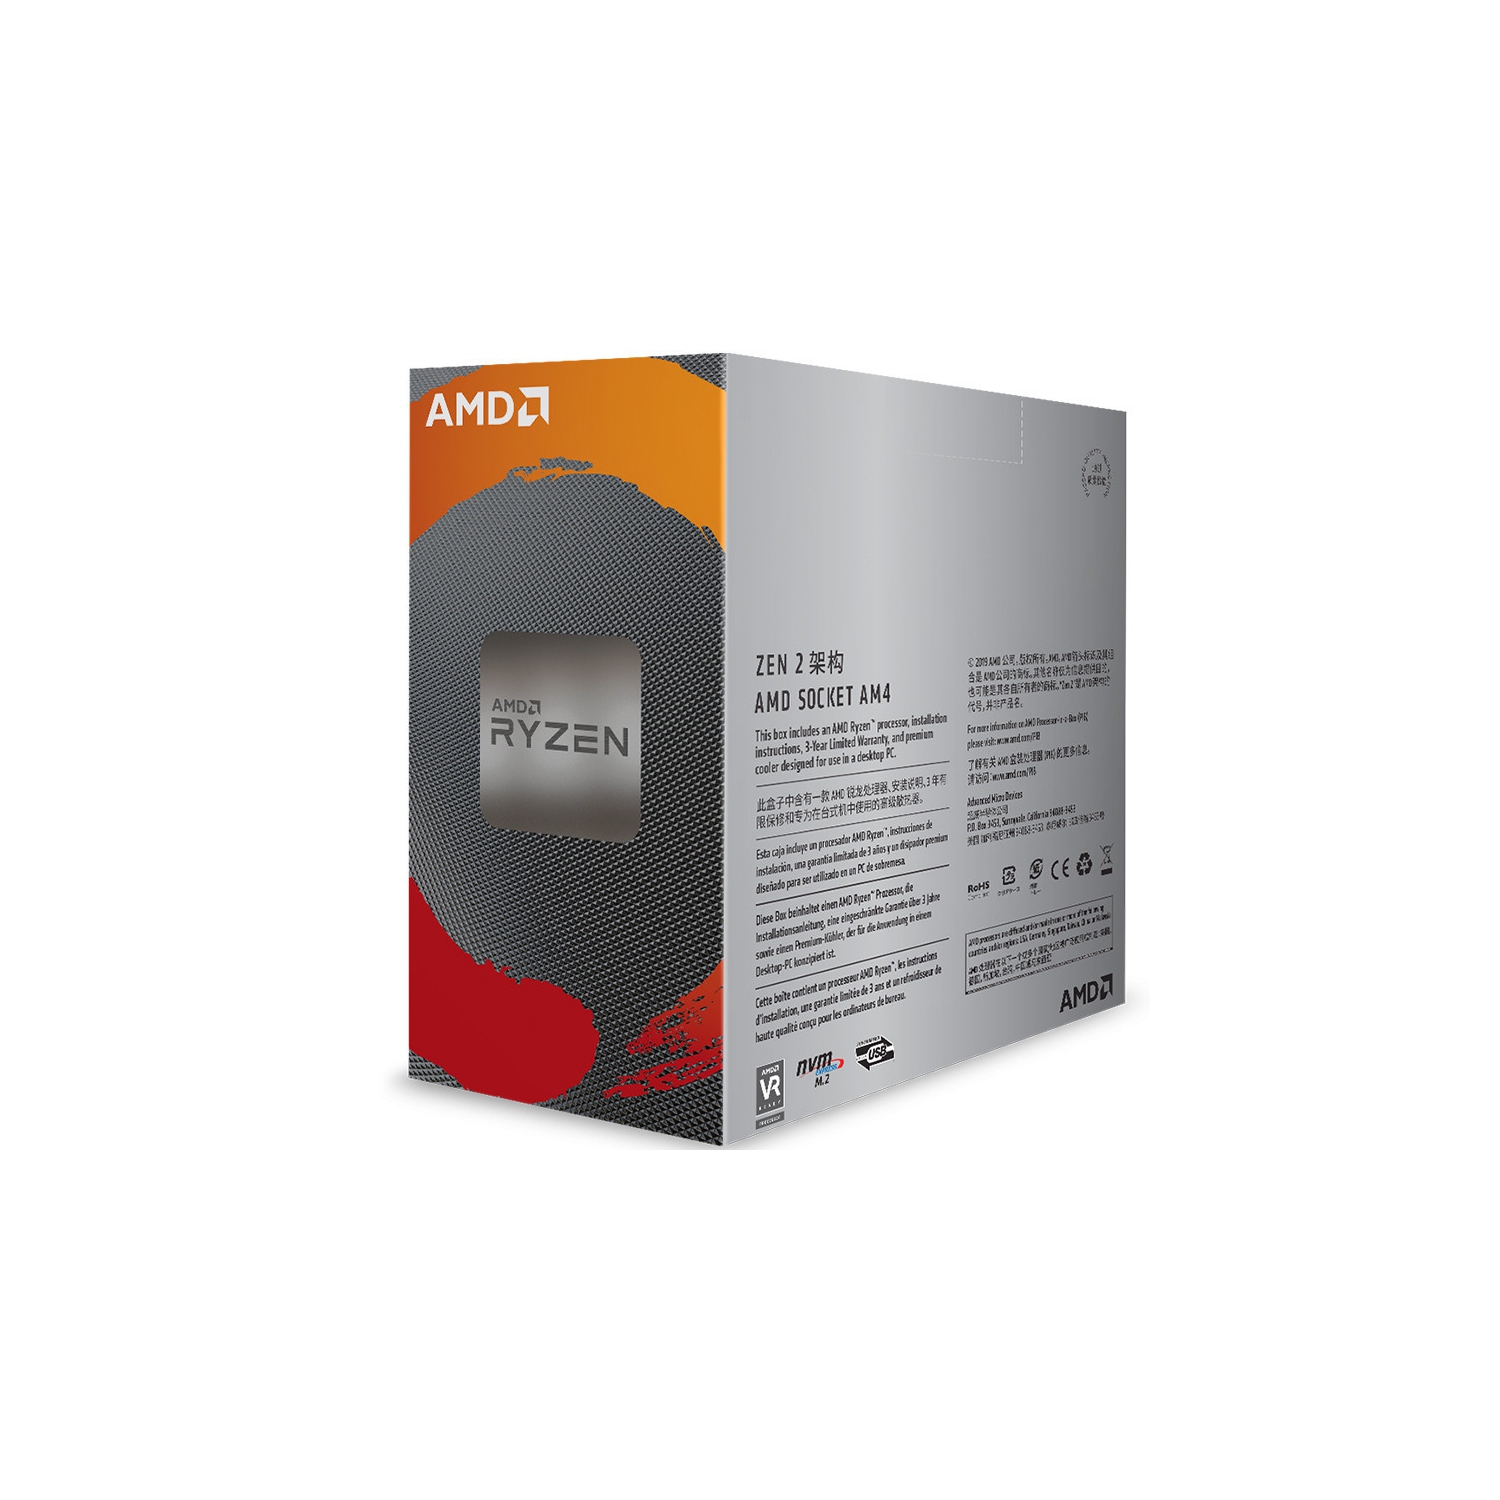 AMD Ryzen 5 3600 - 6 Core 12 Thread Unlocked Desktop Processor / 100-100000031BOX